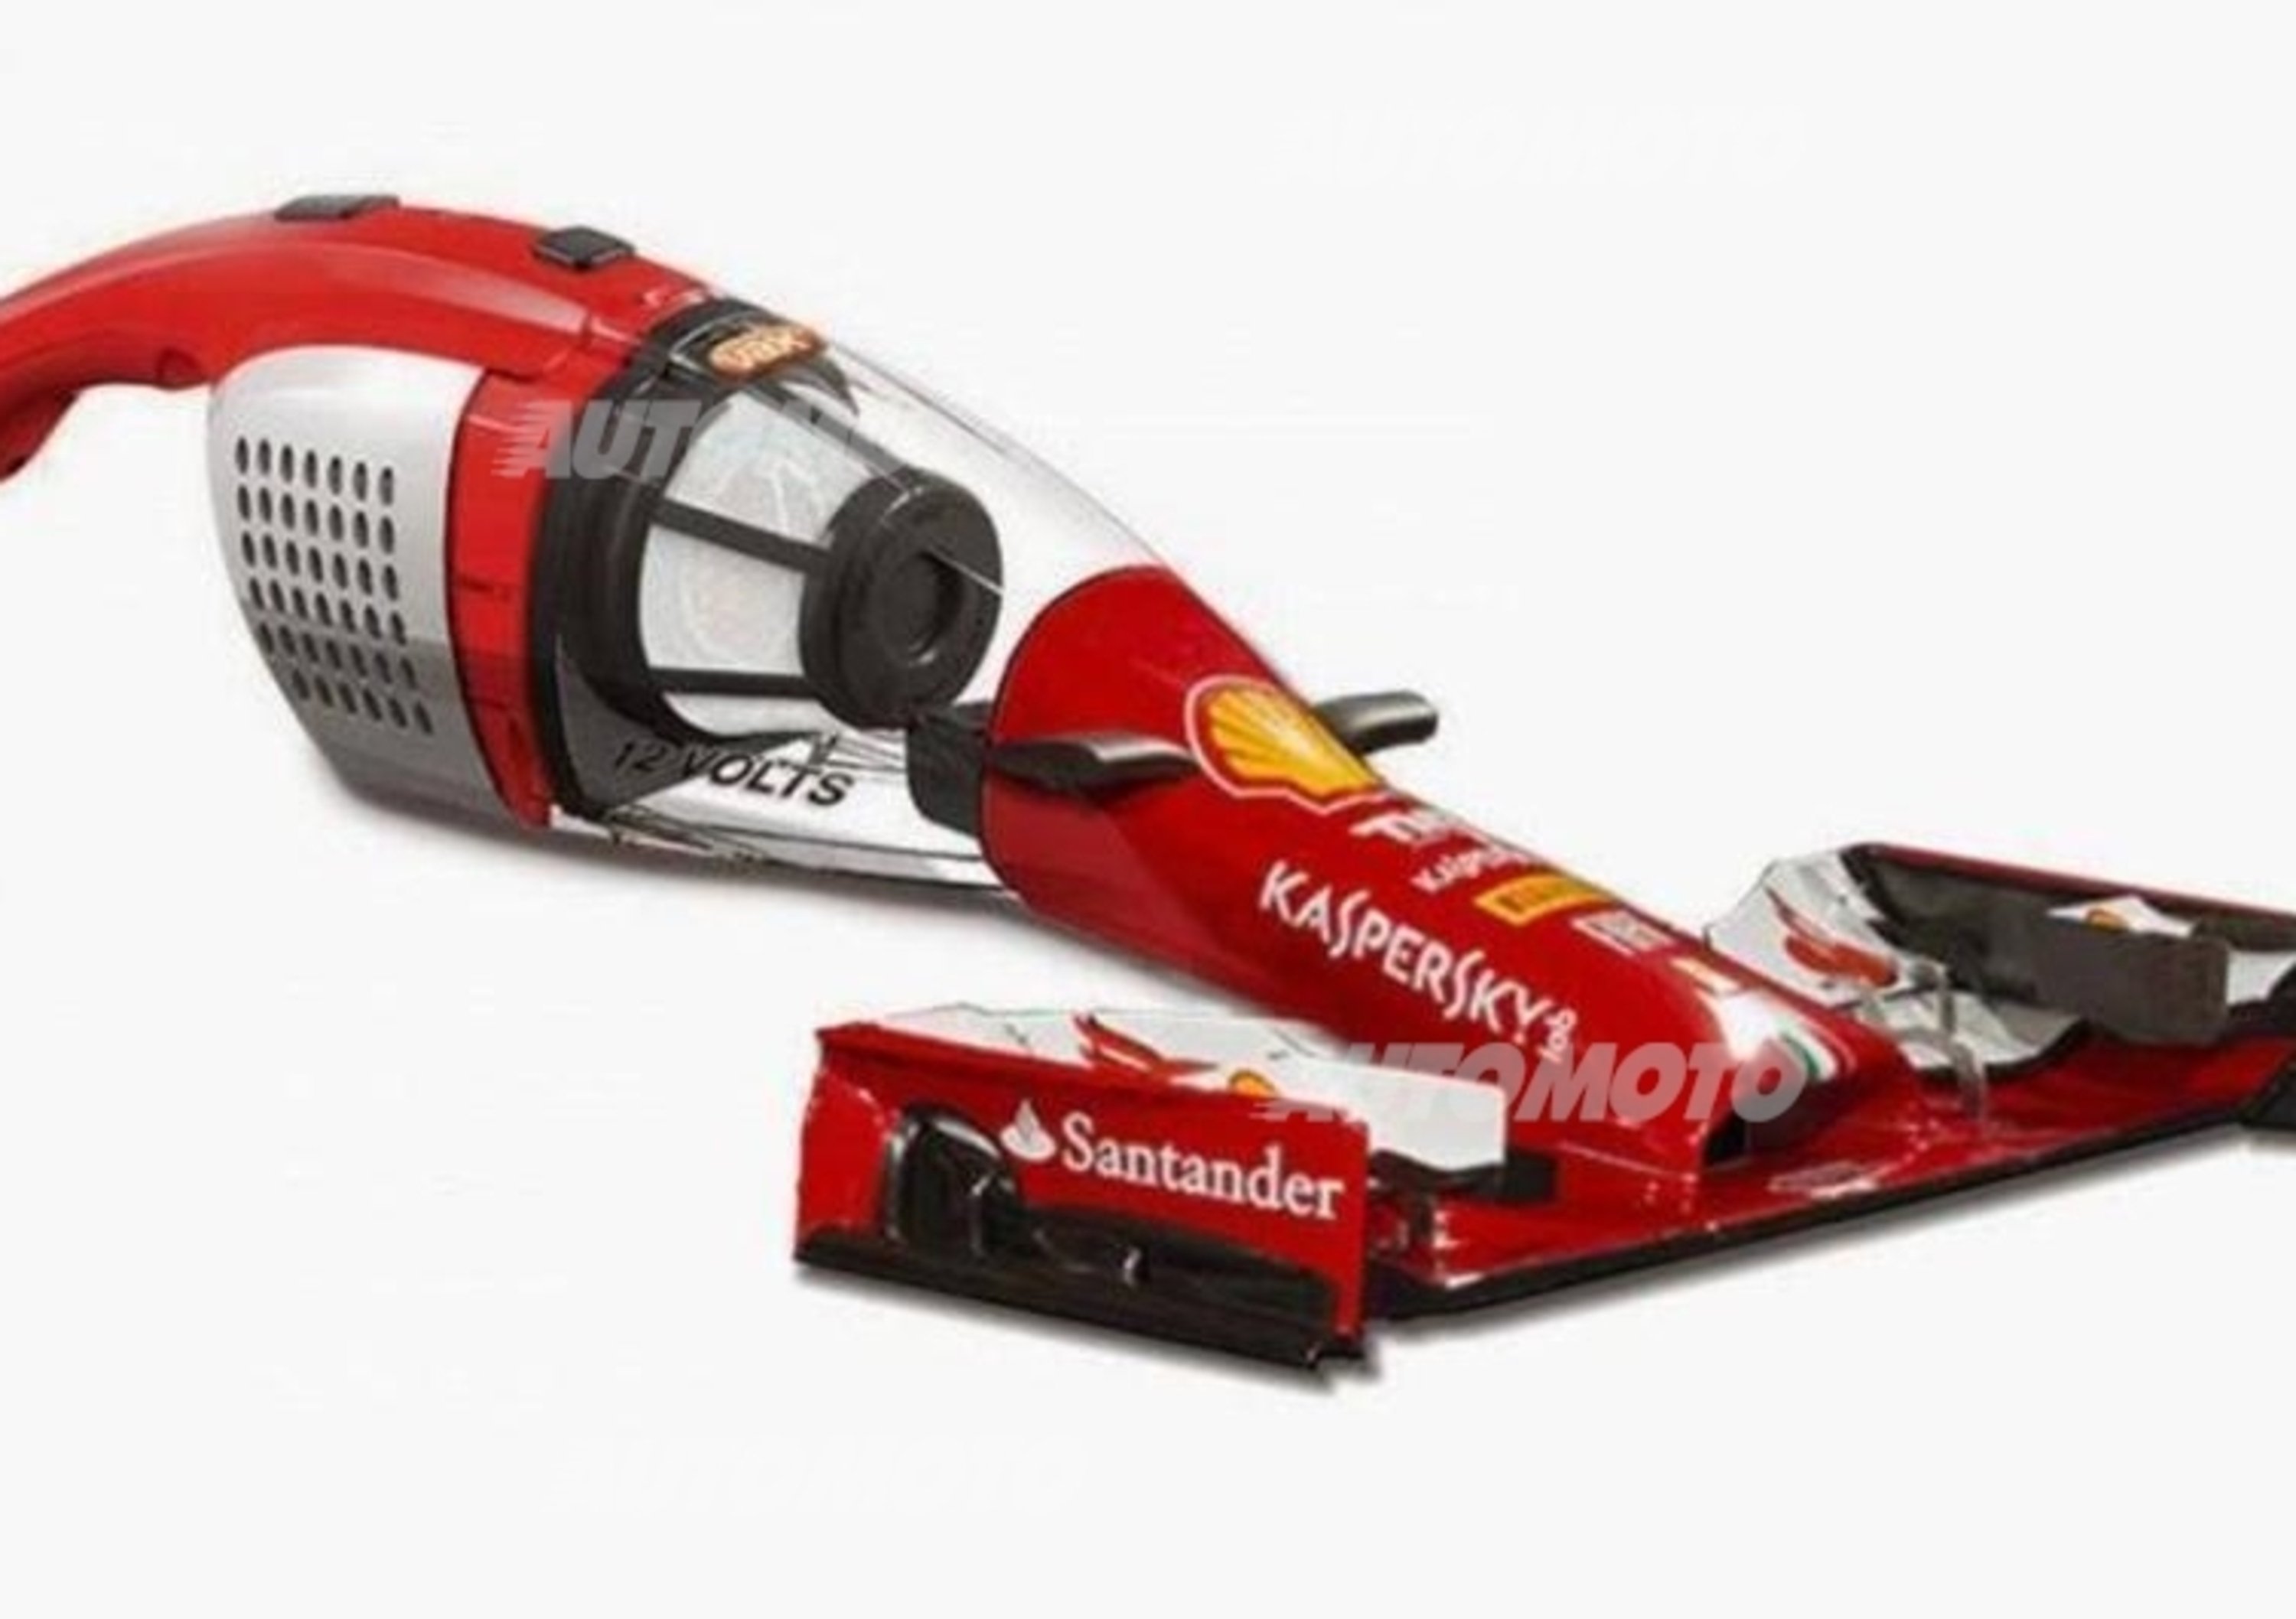 Formula 1 2014: esilaranti parodie dei musetti spopolano in rete